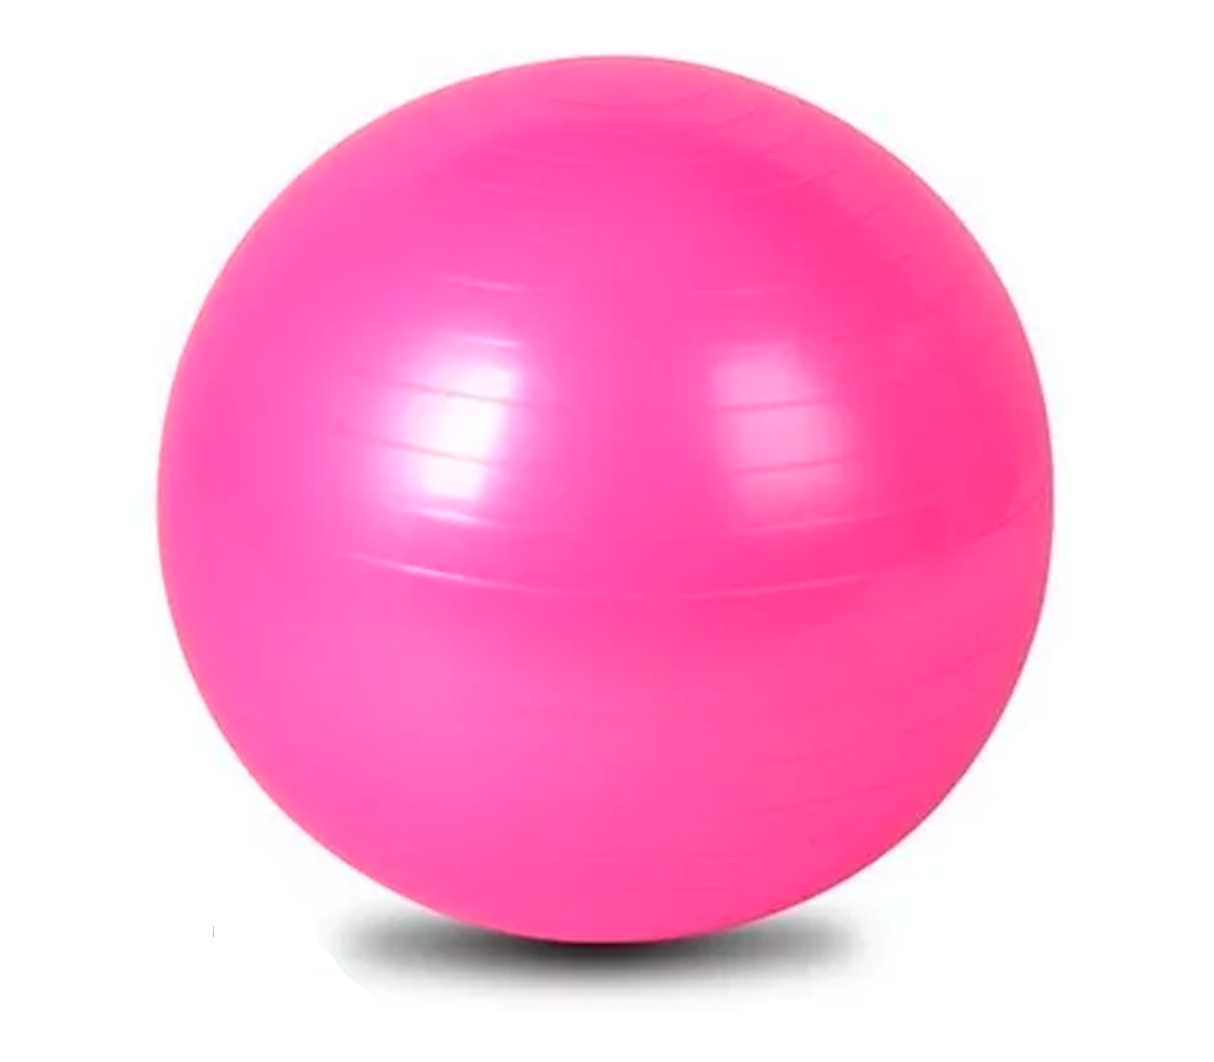 Balón de gym 75 centimetros Tamanaco